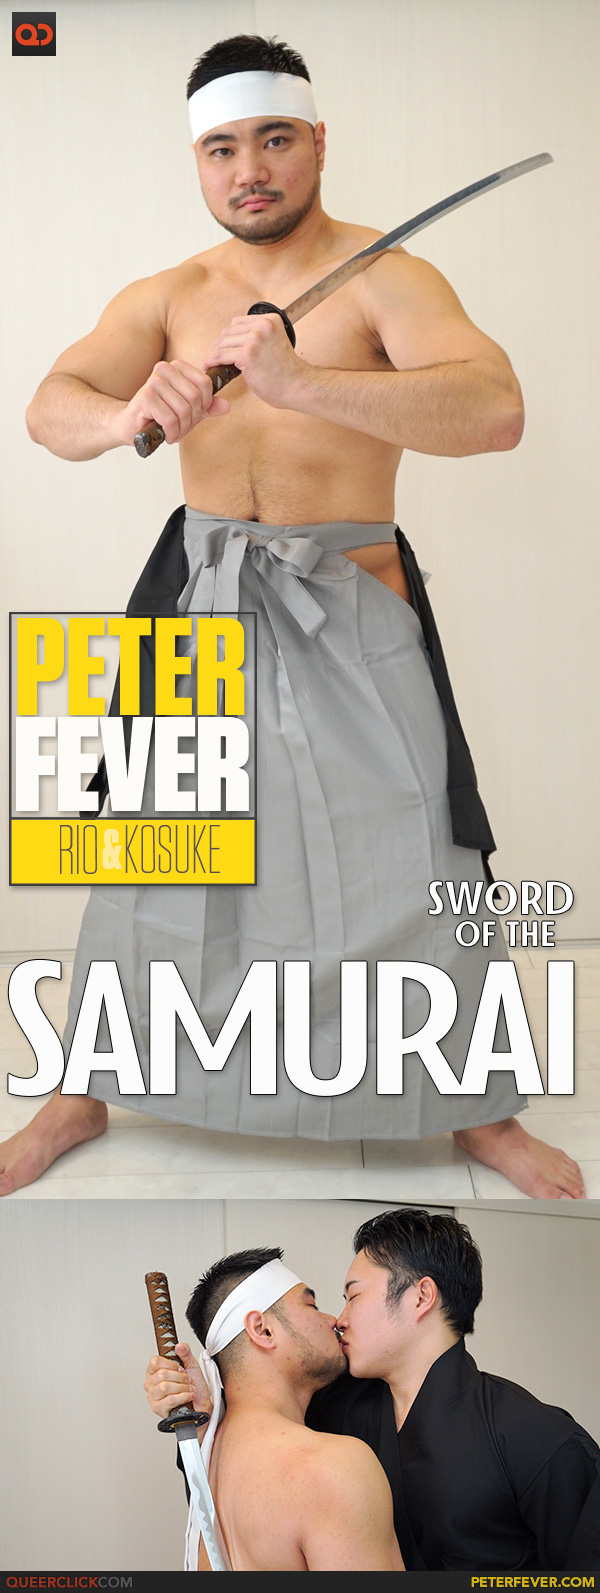 Peter Fever: Rio and Kosuke